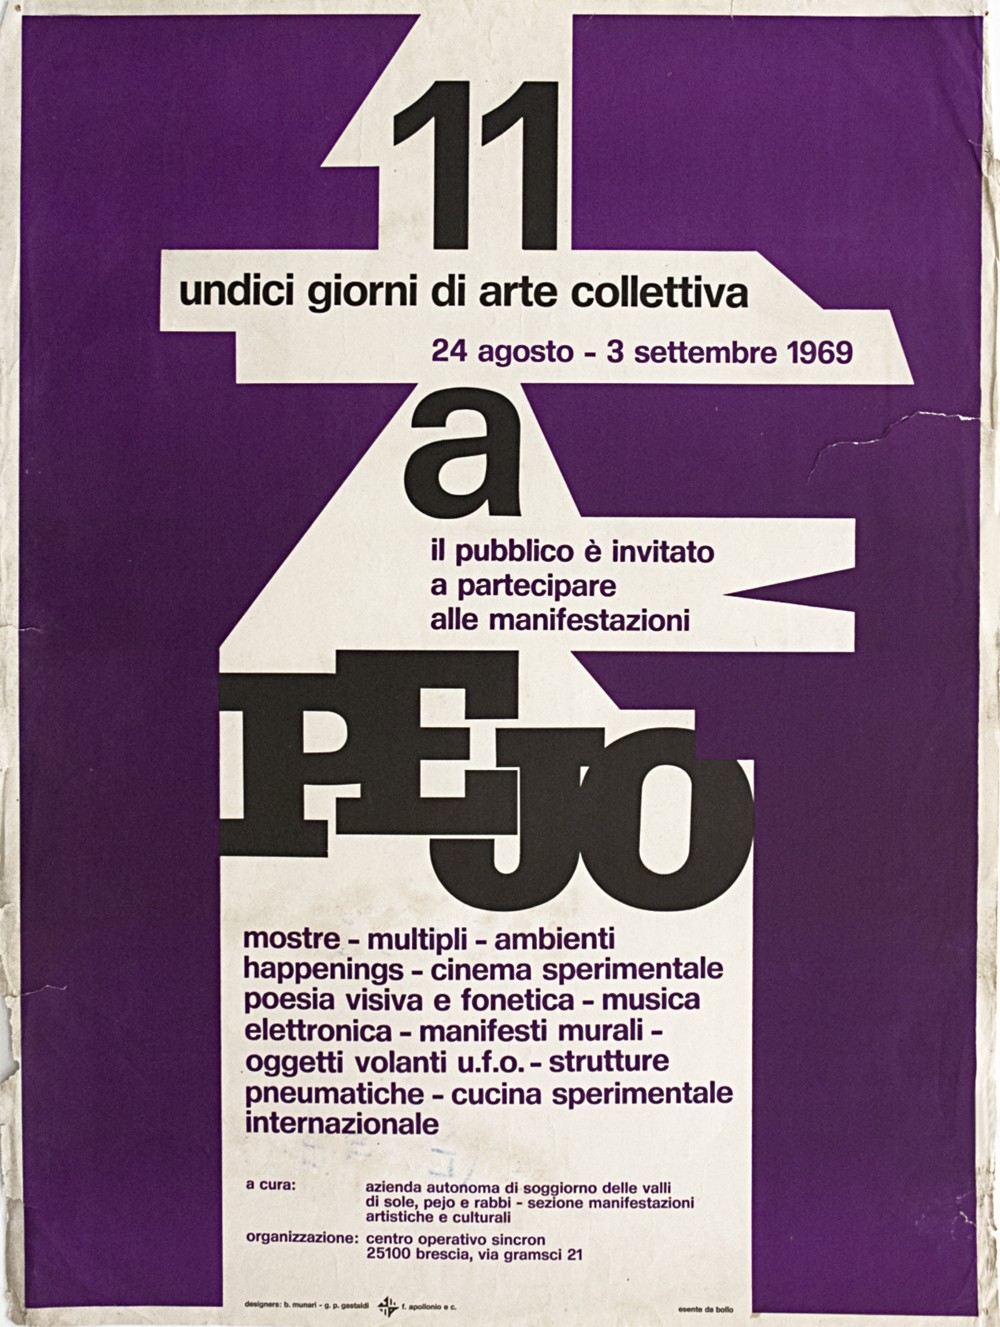  Cartaz do encontro Undici Giorni di Arte Collettiva, em Pejo, 1969.  